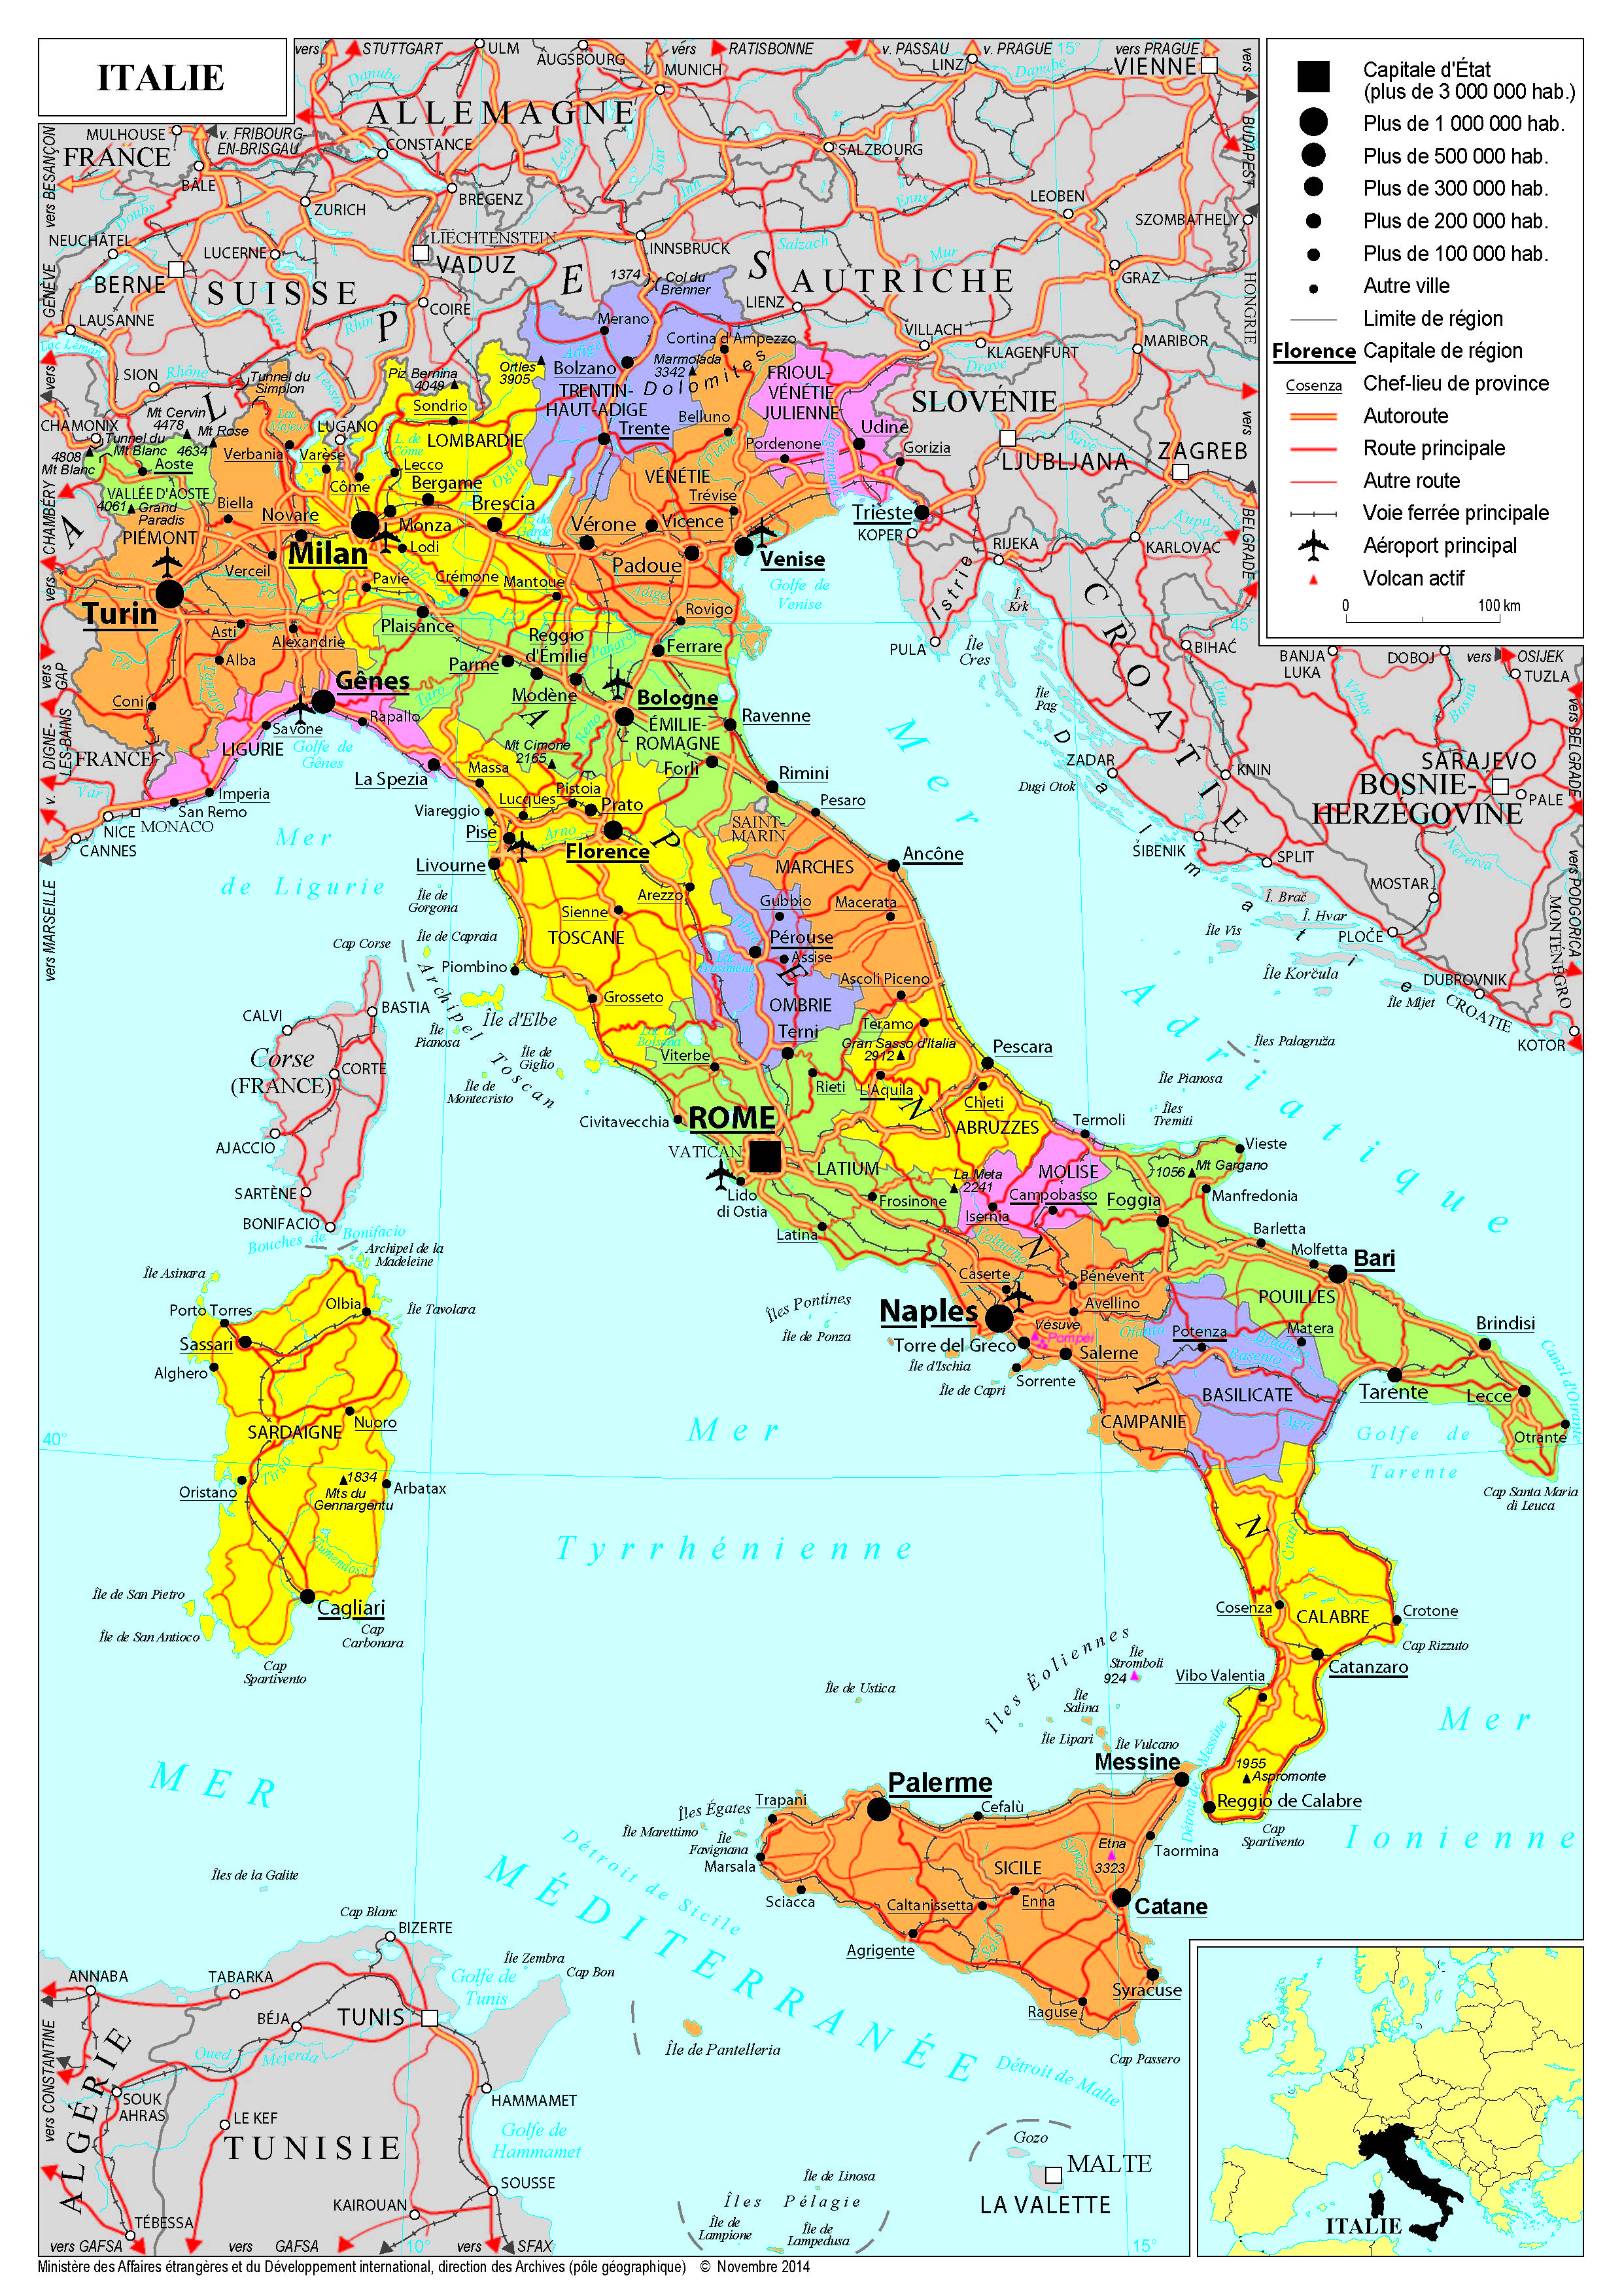 La construction de l'Etat italien